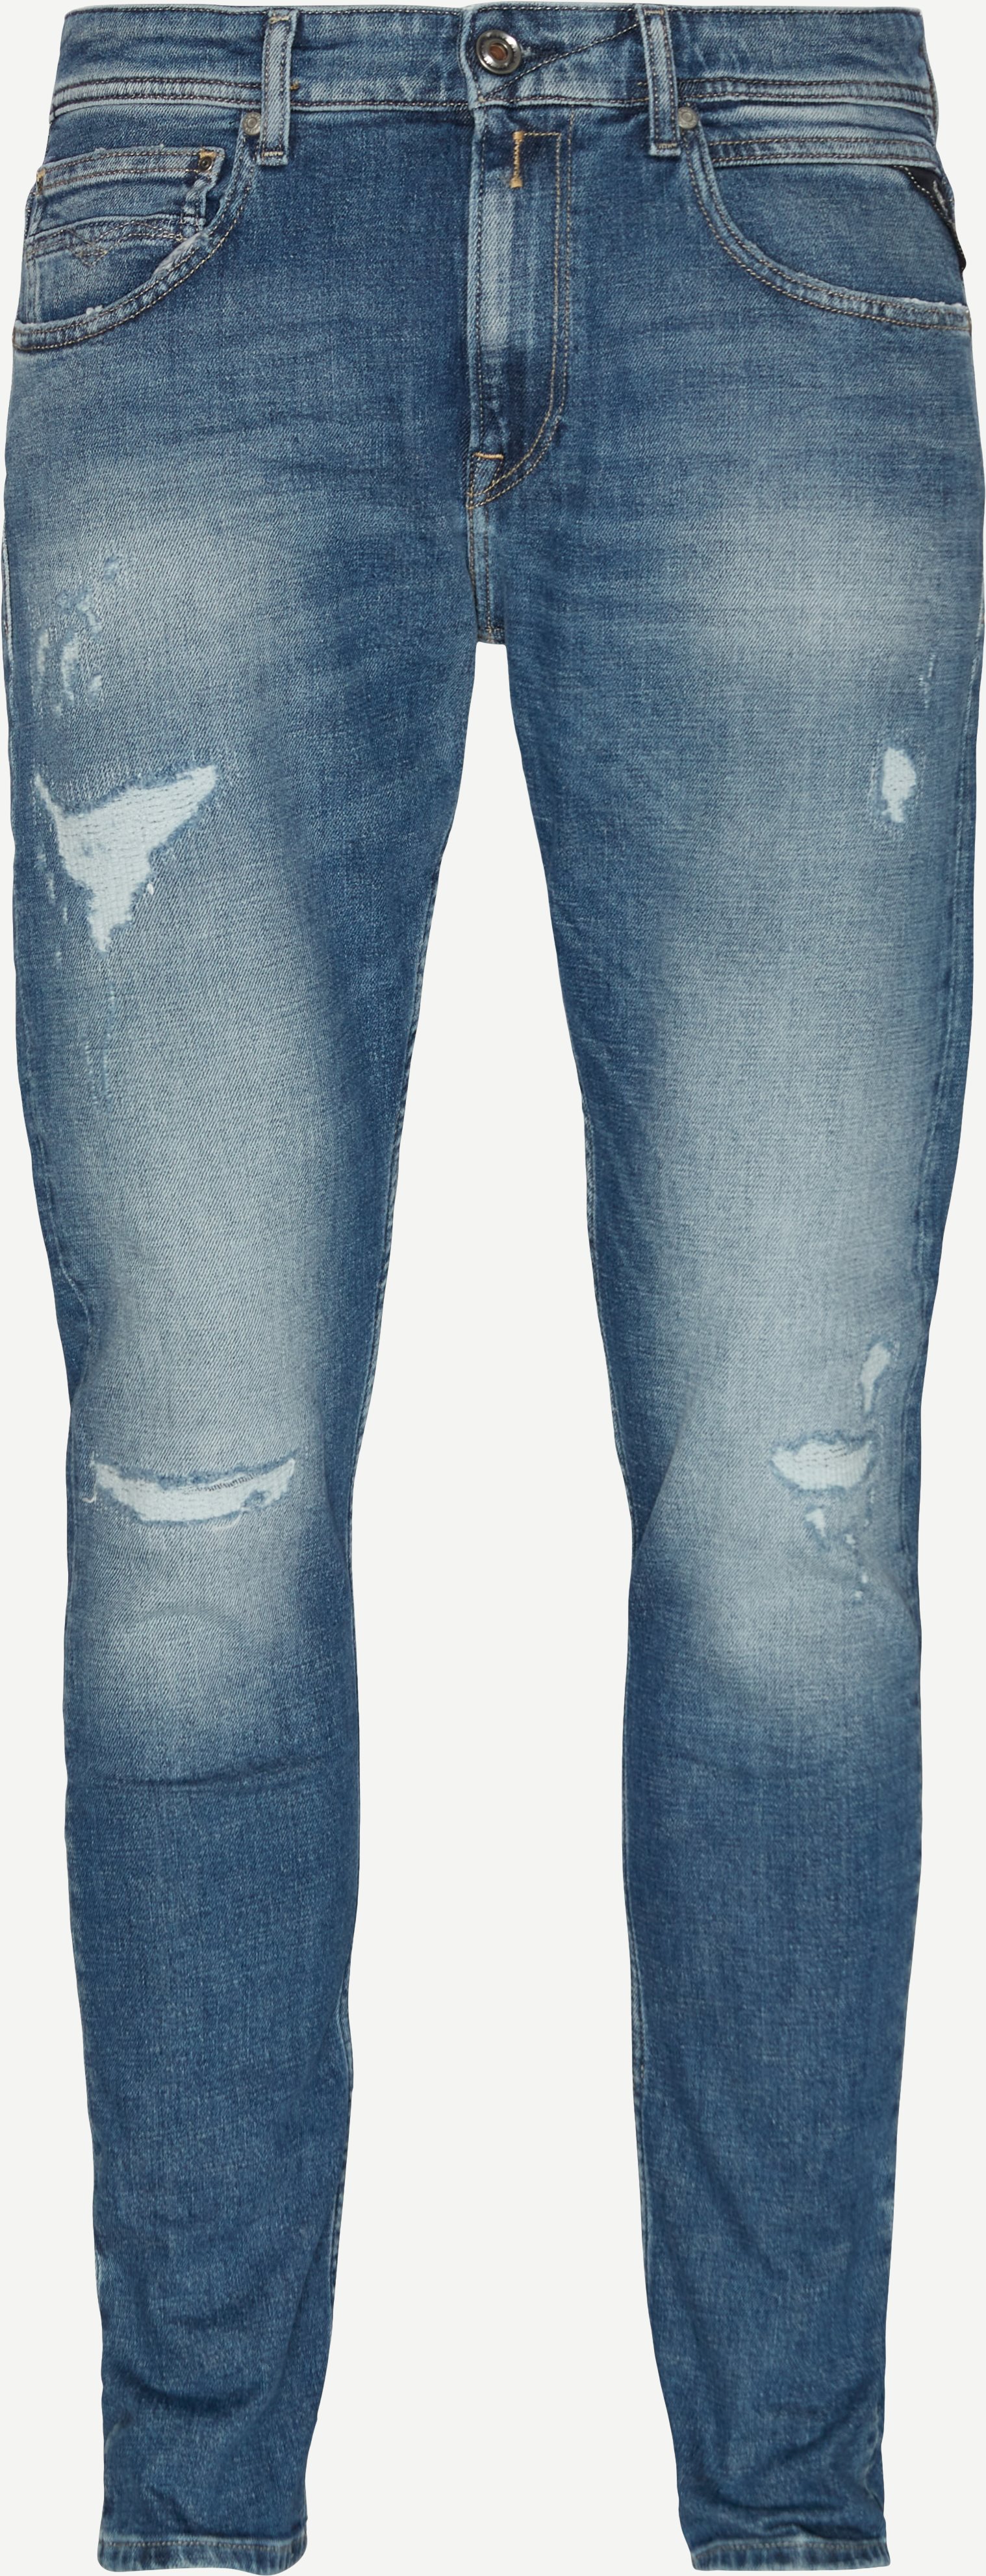 499 98R Johnfrus Jeans mit gebrochenen Kanten - Jeans - Skinny fit - Jeans-Blau